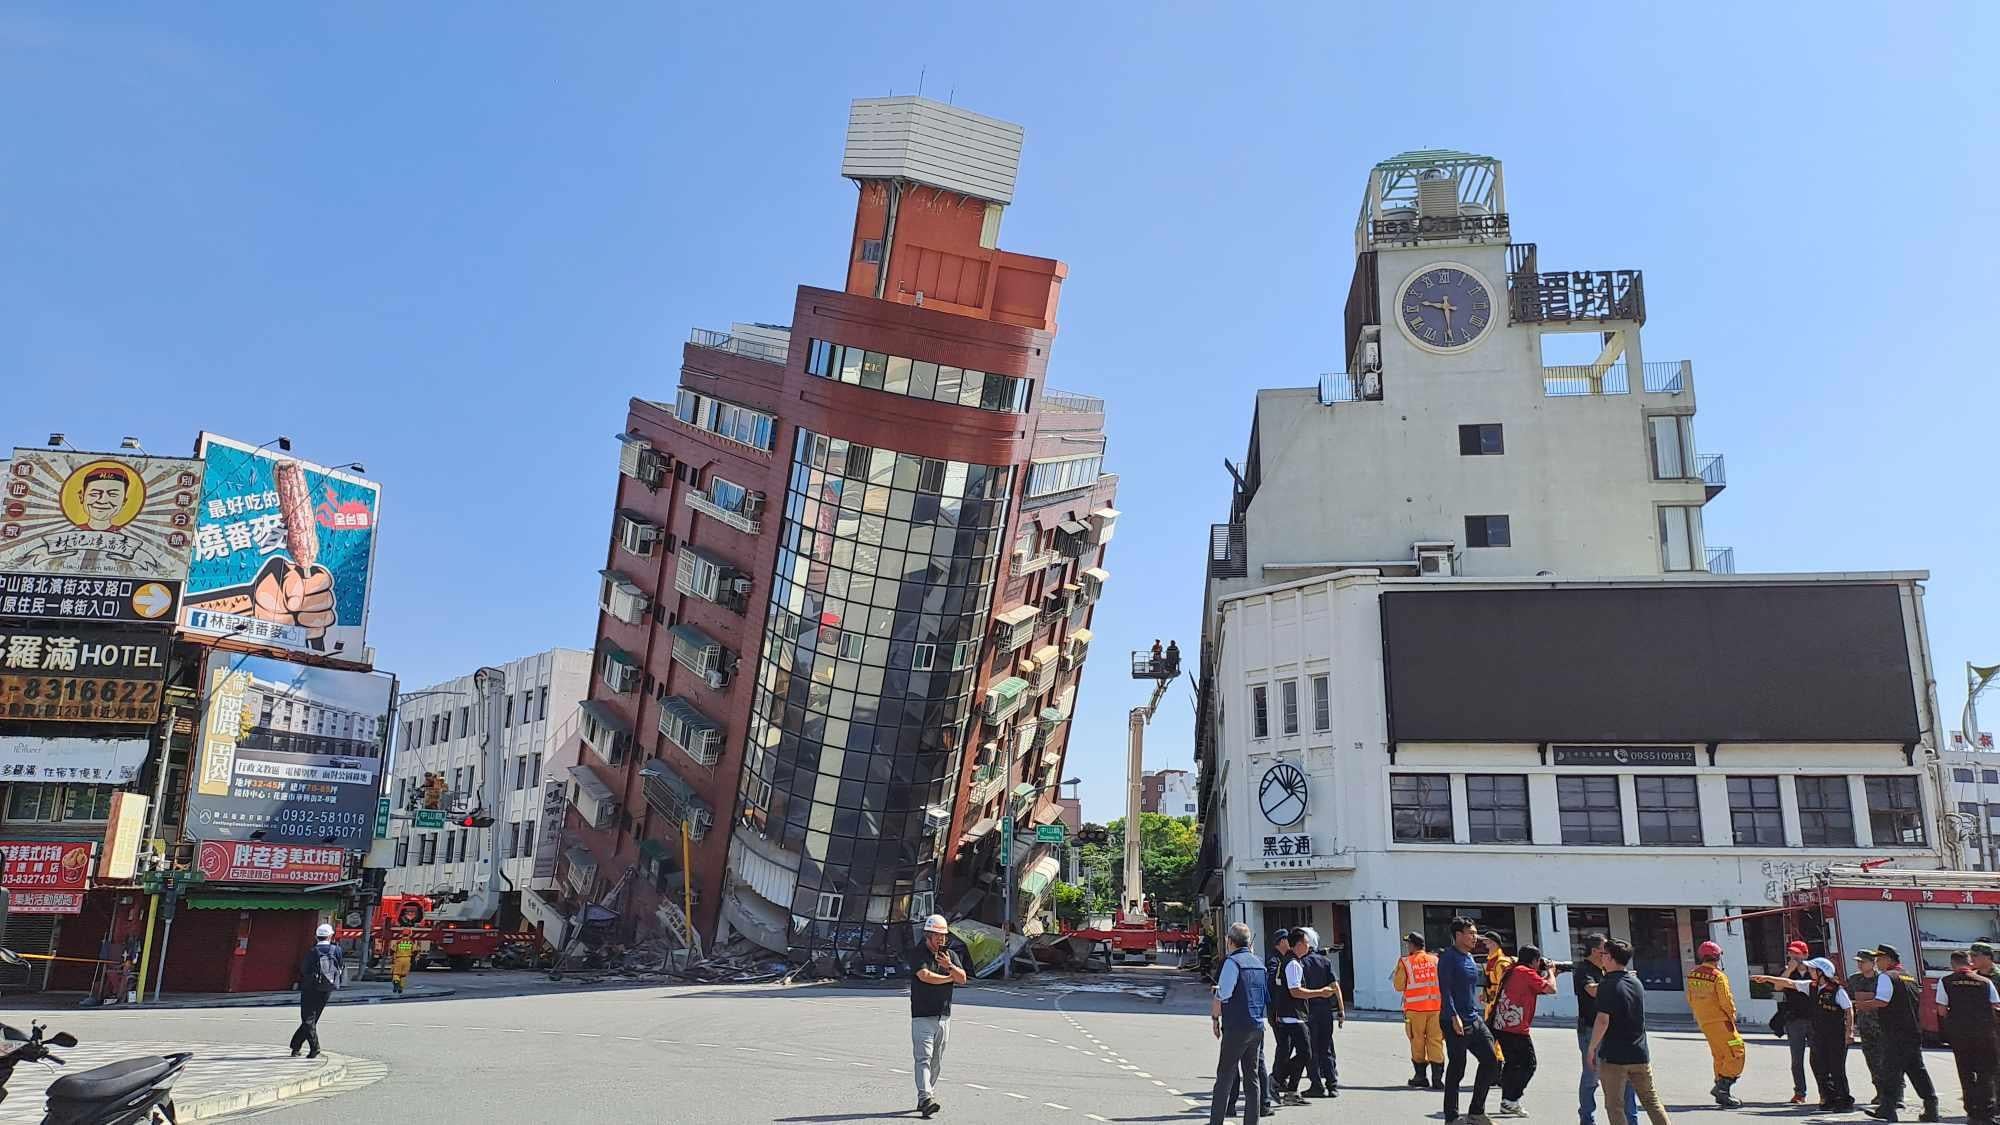 Earthquake in Taiwan today